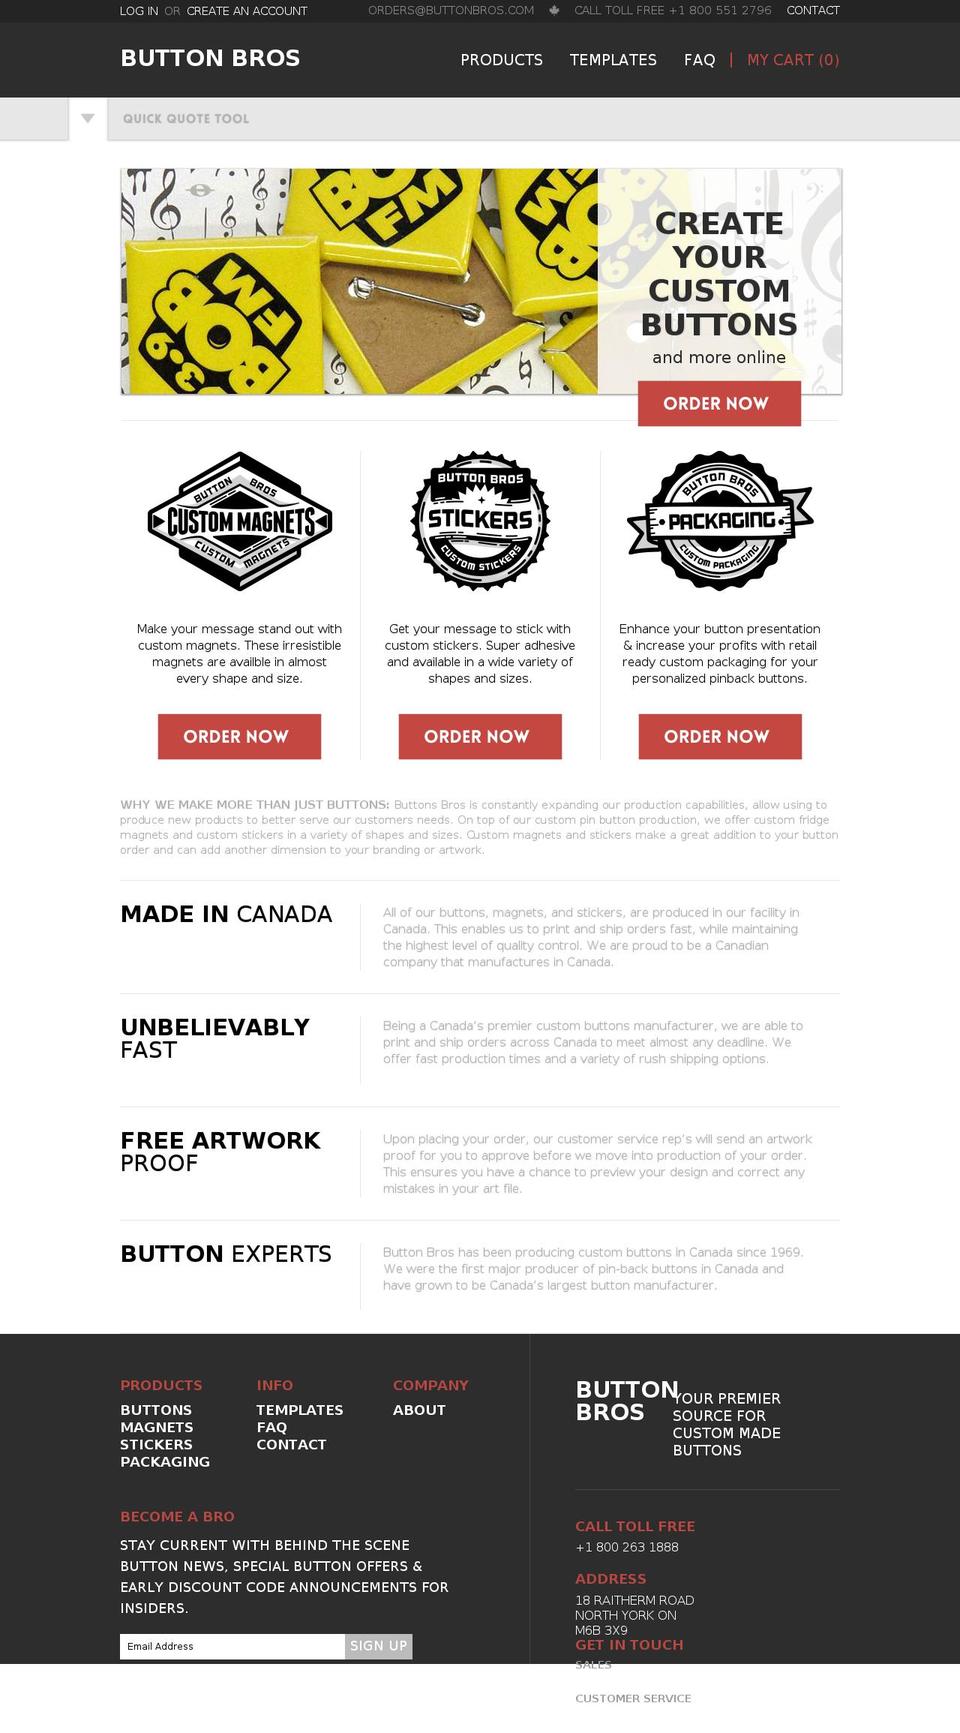 buttonbros.com shopify website screenshot